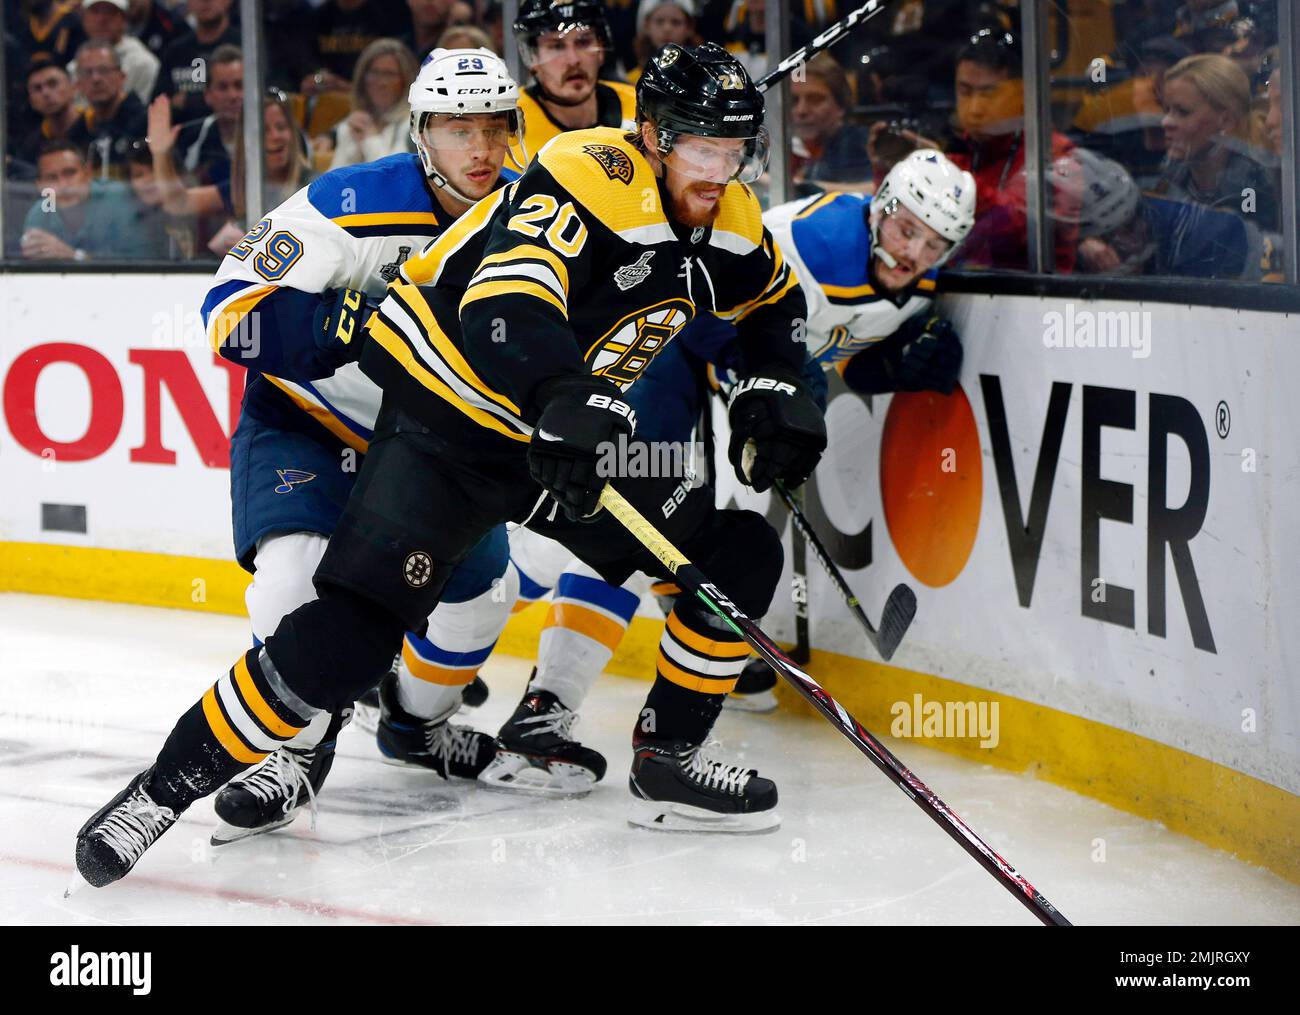 Boston Bruins' Joakim Nordstrom, of Sweden, skates against the St